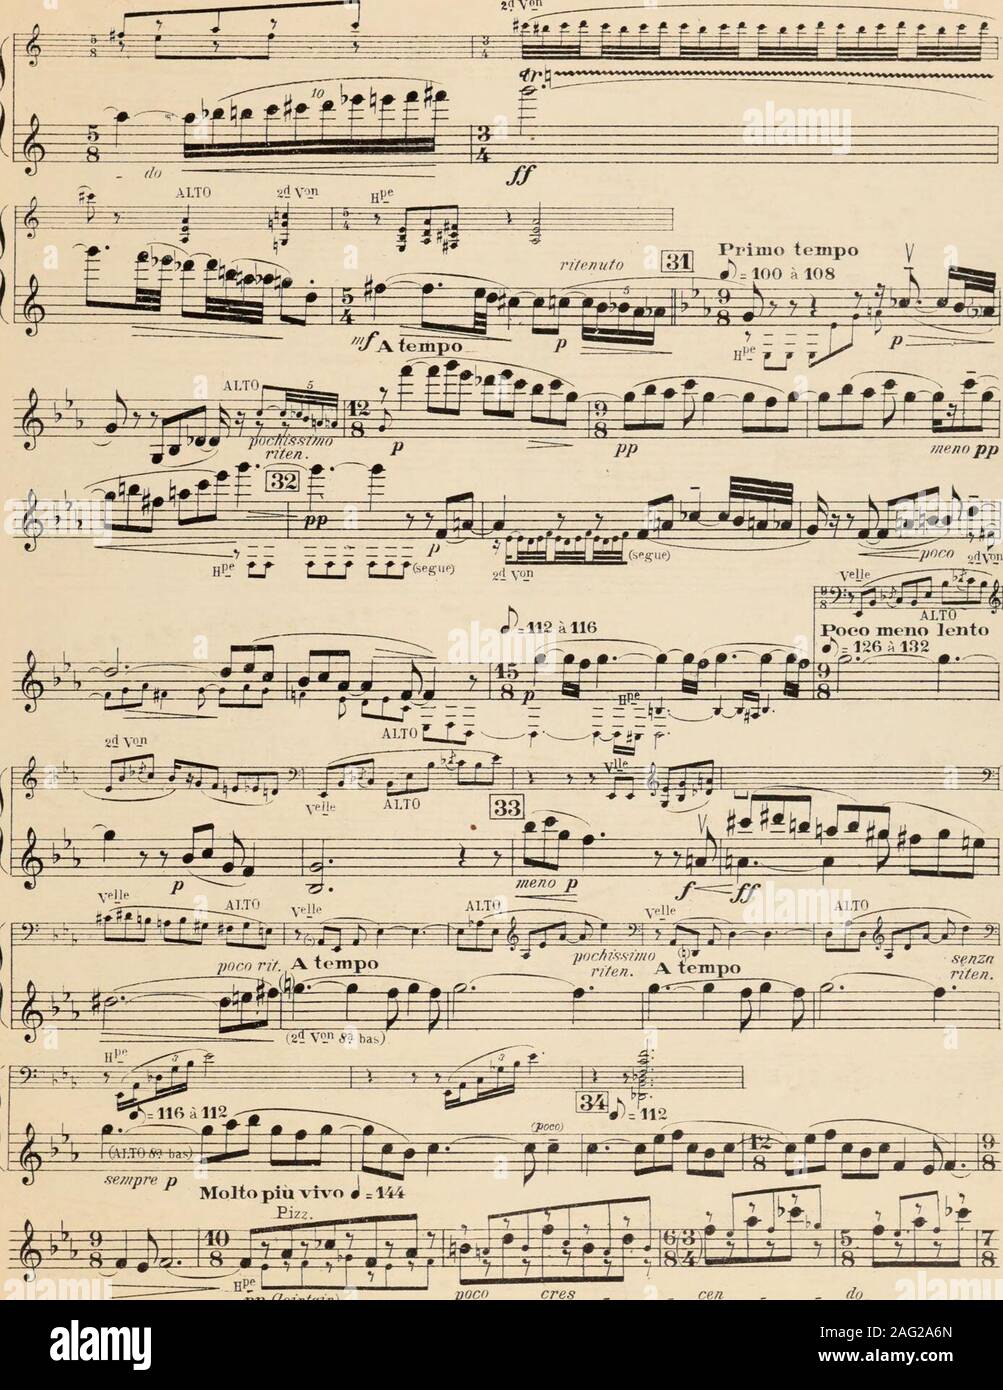 . Quintette en ut mineur pour deux violons, alto, violoncelle, et harpe. A.l.. 1»^.0?8 1I VIOLON 2&lt;? VL. pp (lointain) poco ores A.L.l«.&lt;.i8 8 Molto piu lento J r96 a 92 ALTO A li VIOLON Mettez la sourdine fit en I U T r ? y ^ % & ^ ^ i i iS: A^jJU^i- ^*^ ^ I 35 PriiMo tempo tranqnillo molto 4)-. 104 Stock Photo